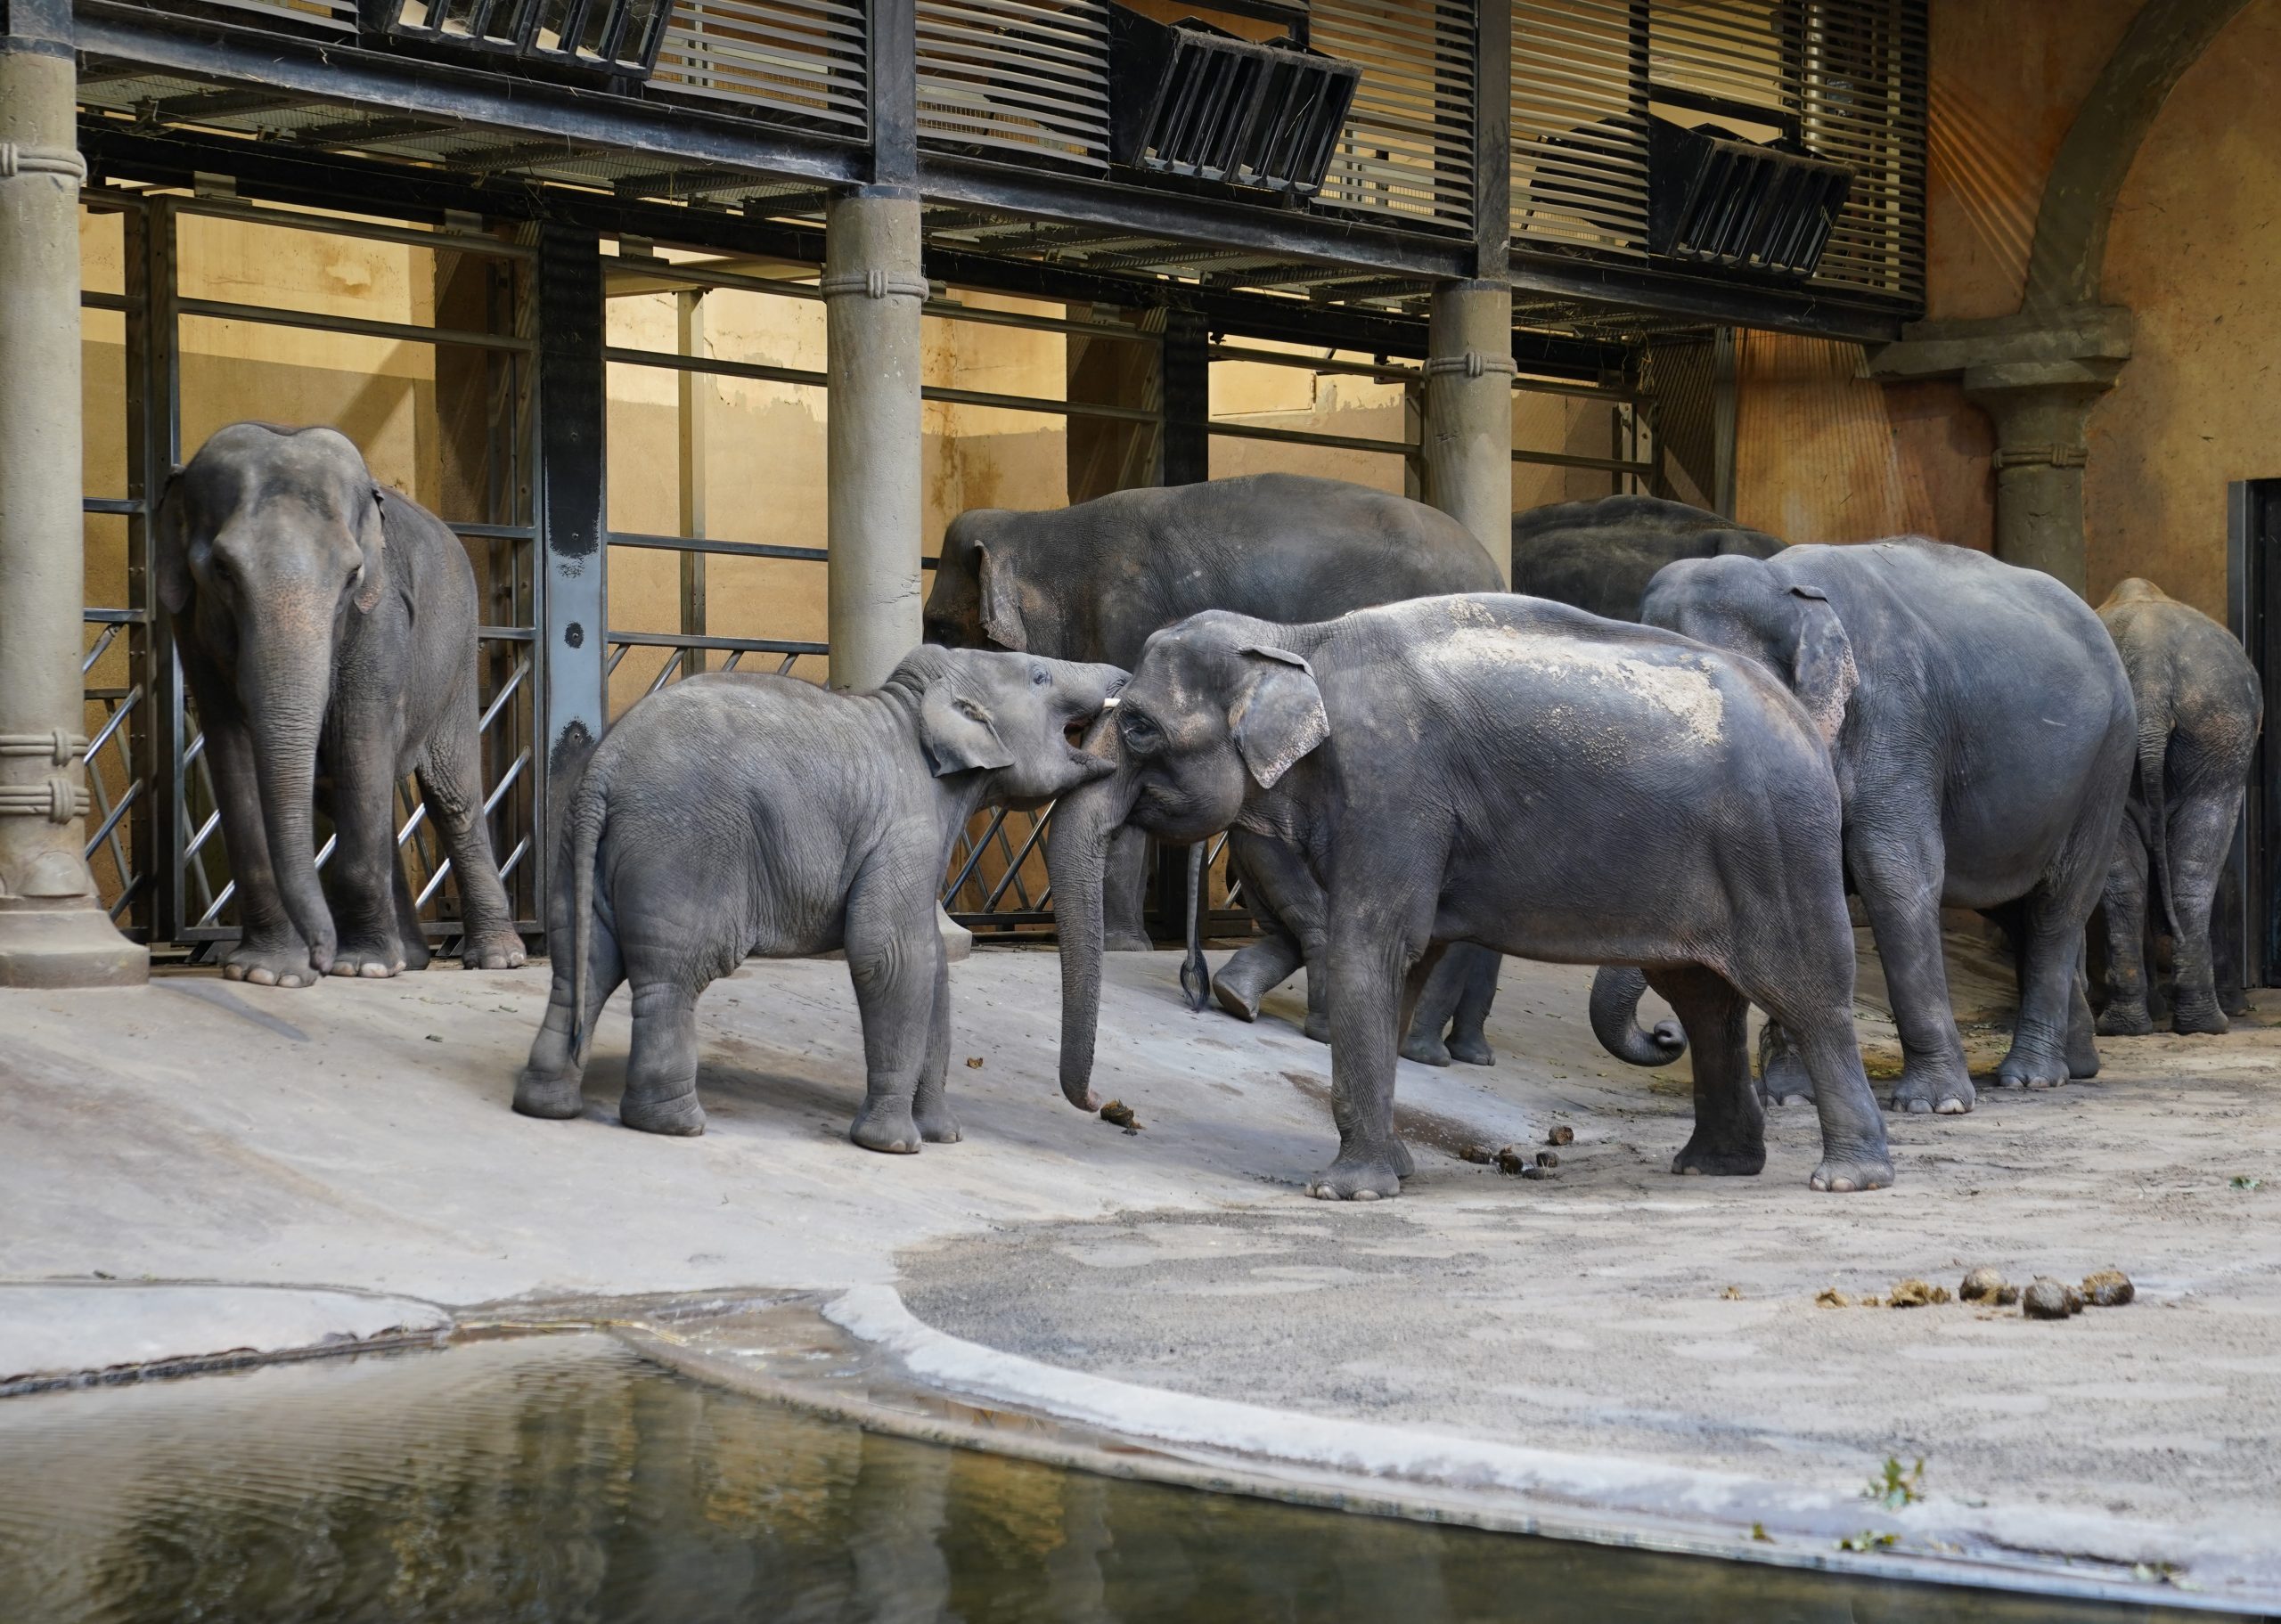 Elefanten im Tierpark Hagenbeck